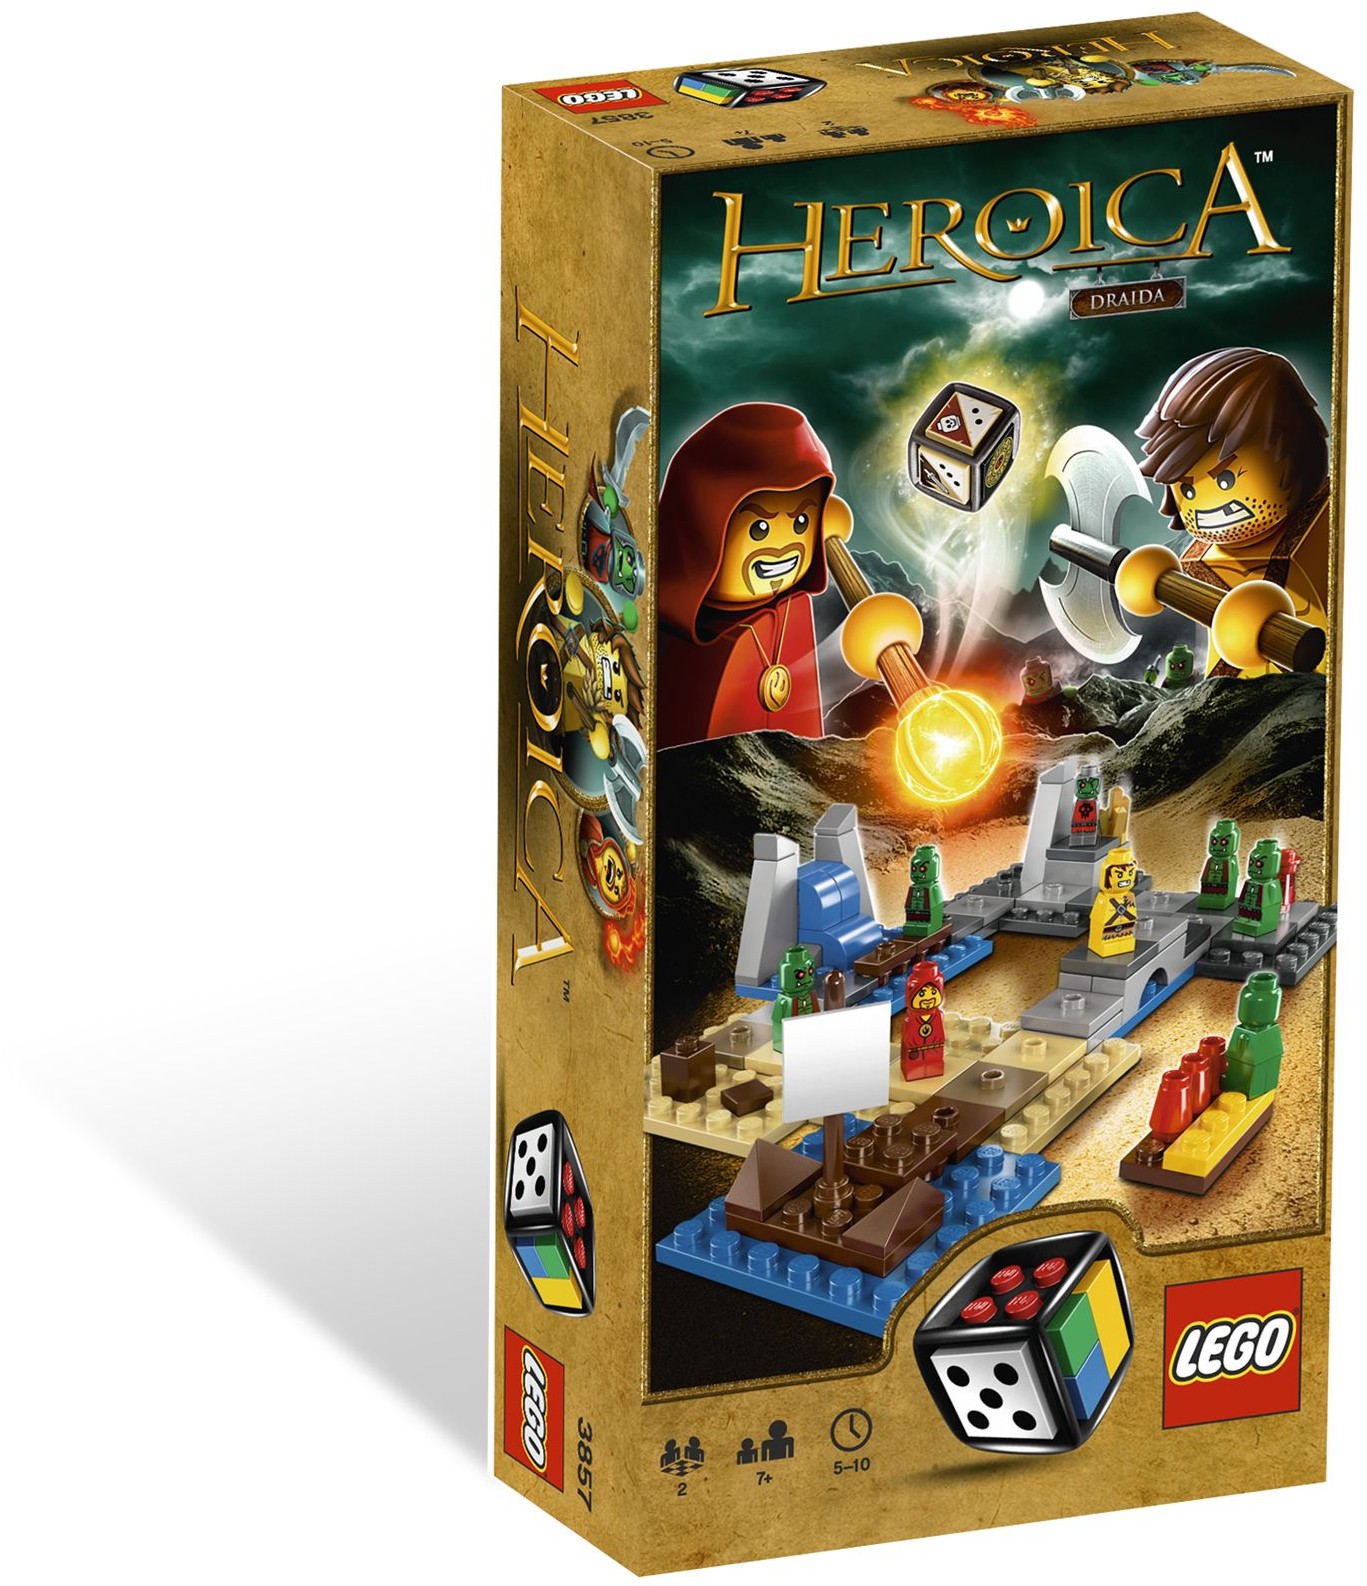 klud Express porter Games | Heroica | Brickset: LEGO set guide and database